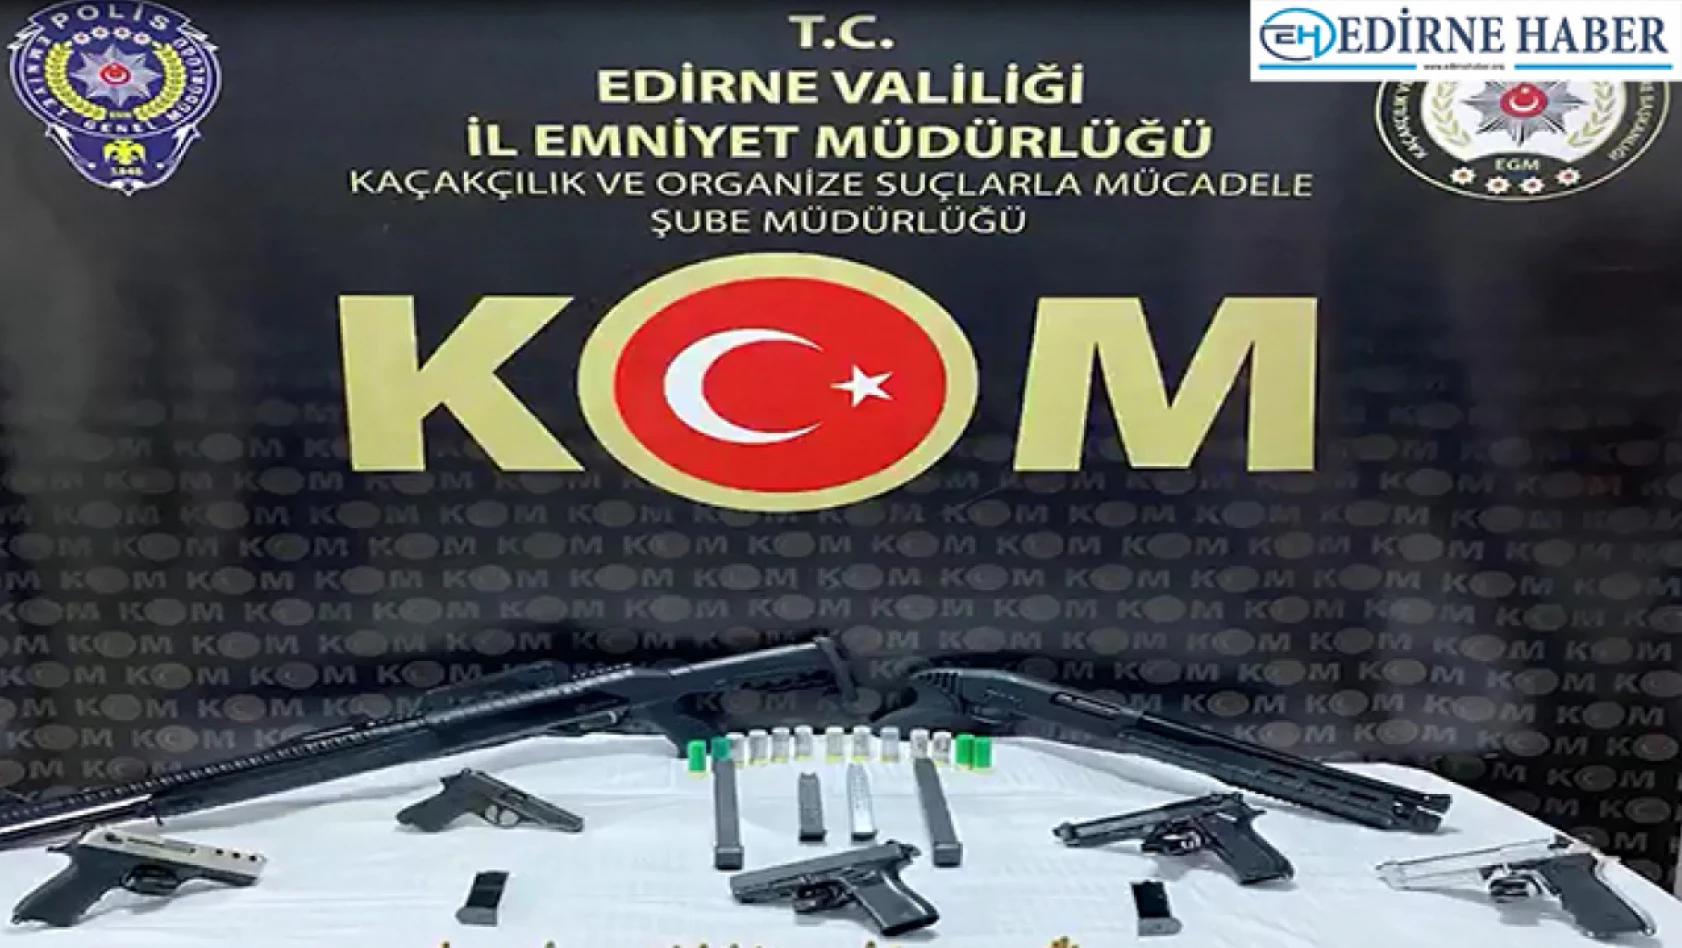 Edirne'de suç örgütlerine silah temin eden 8 kişi gözaltına alındı